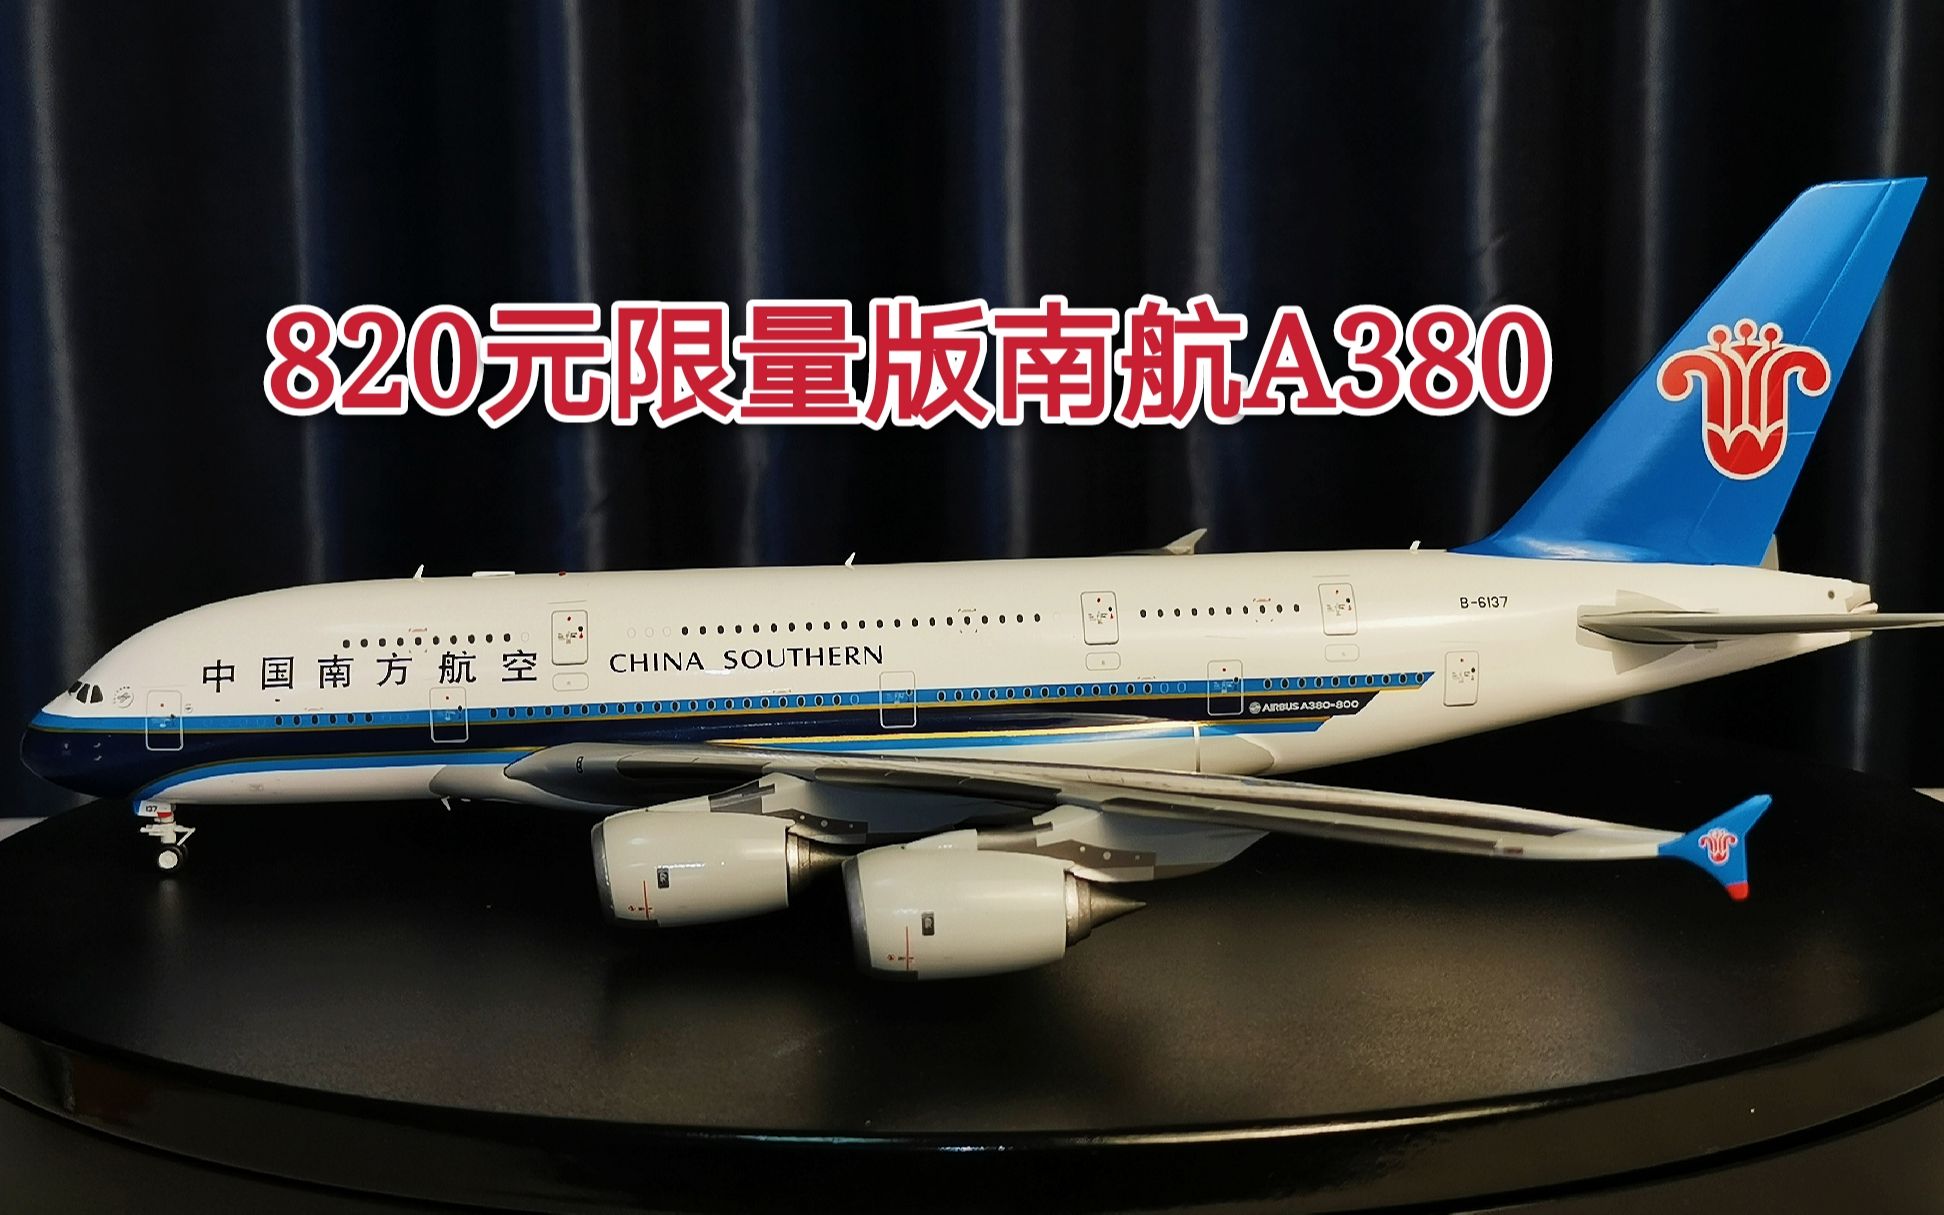 飞机模型测评：JC wings模型1:200的空客A380中国南方航空，820元的模型 